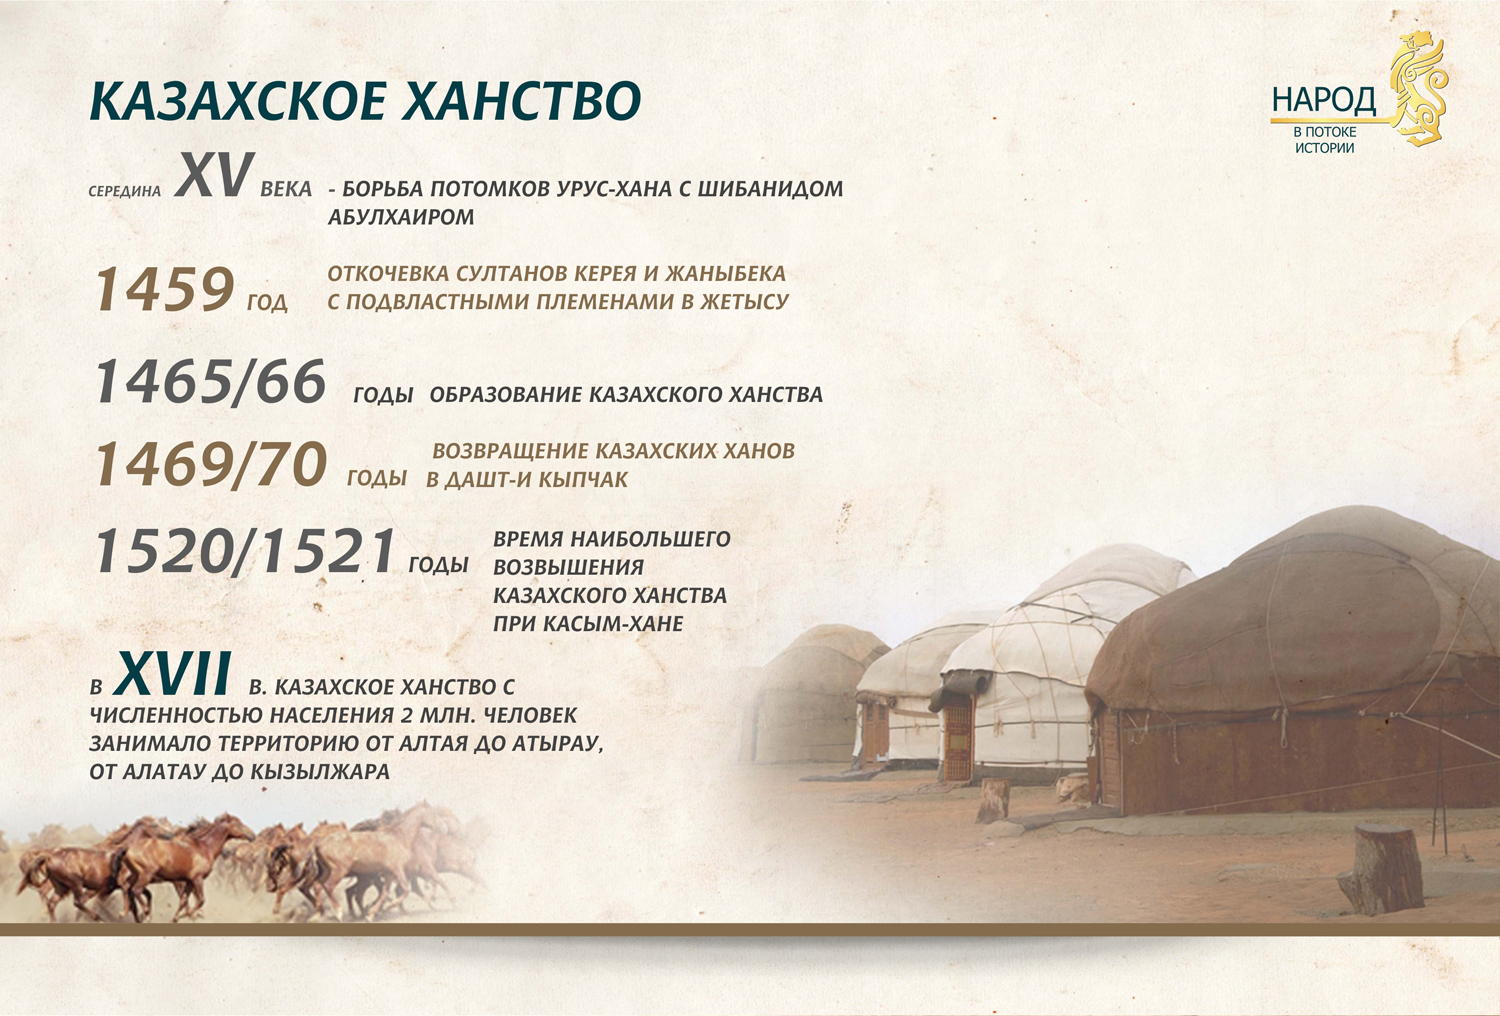 1 казахские ханы. Образование казахского ханства. Год основания казахского ханства. Год образования казахского ханства. Когда образовалалось казахское ханство.